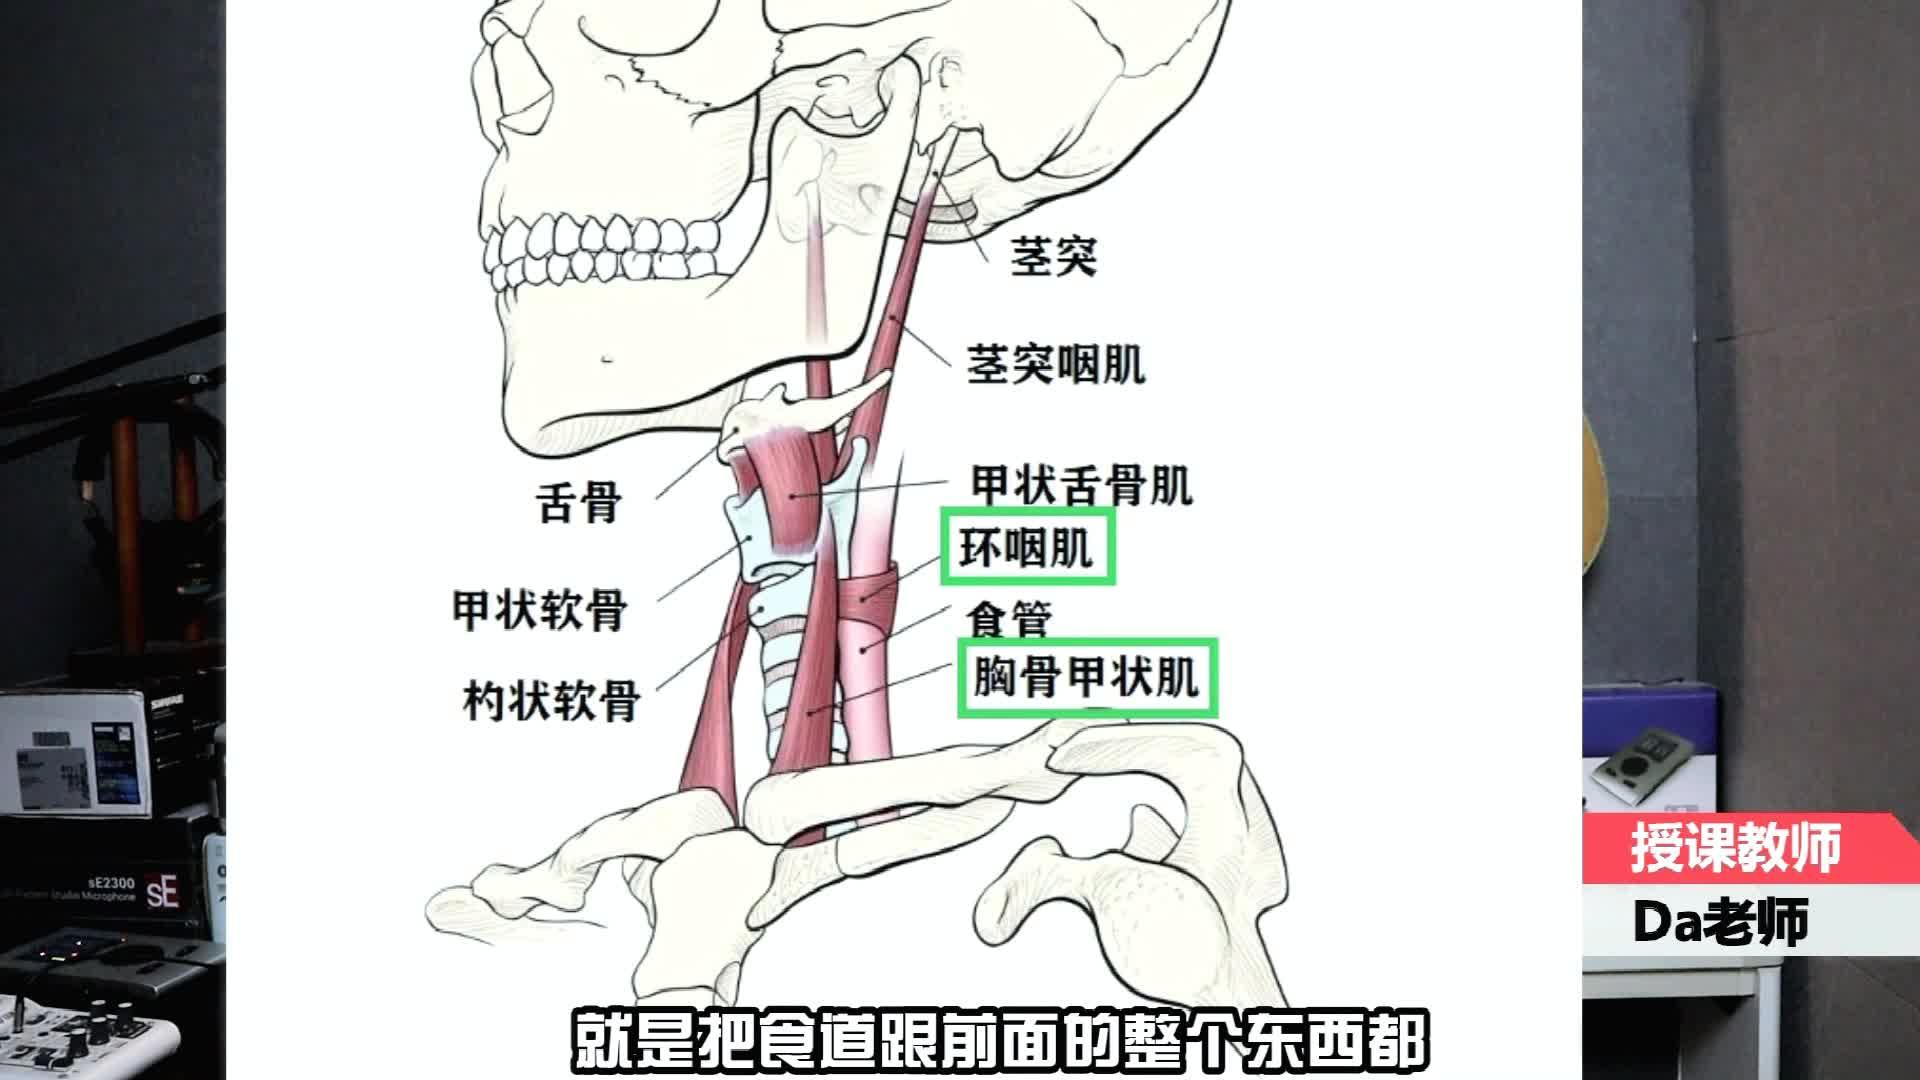 口腔内部肌肉结构图图片